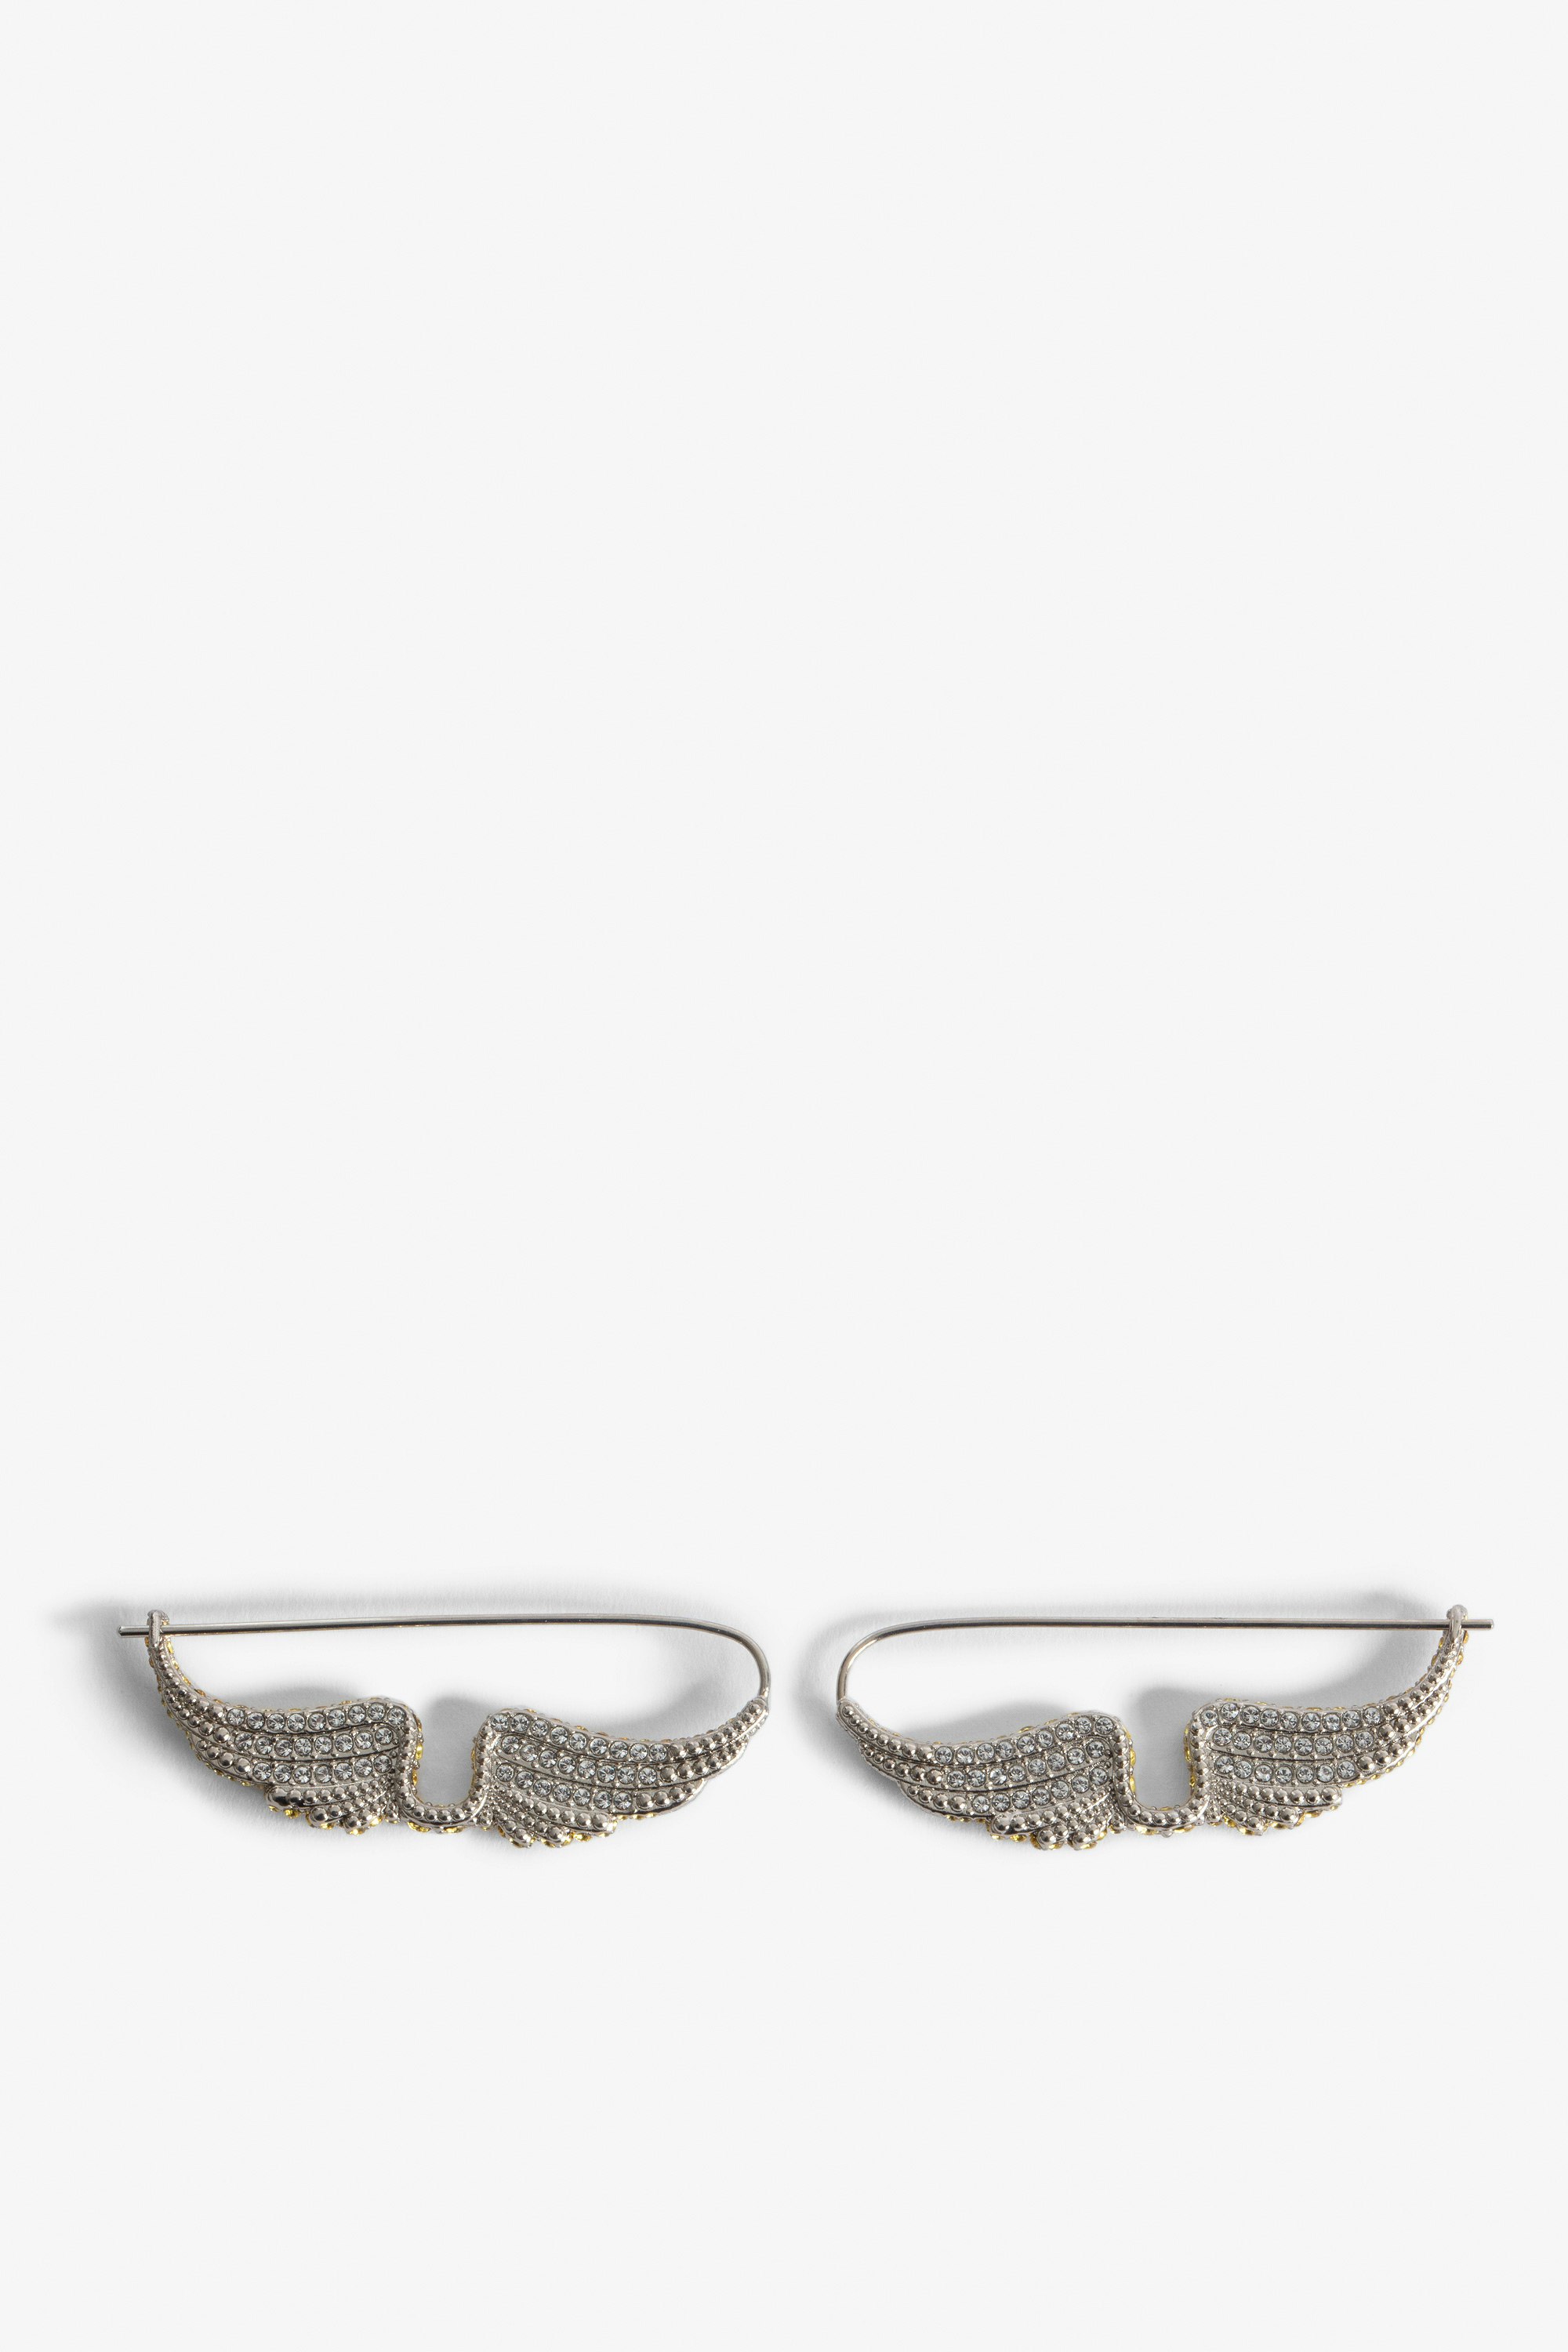 Rock Piercing Earrings - Women’s silver-tone brass earrings with diamanté wings.